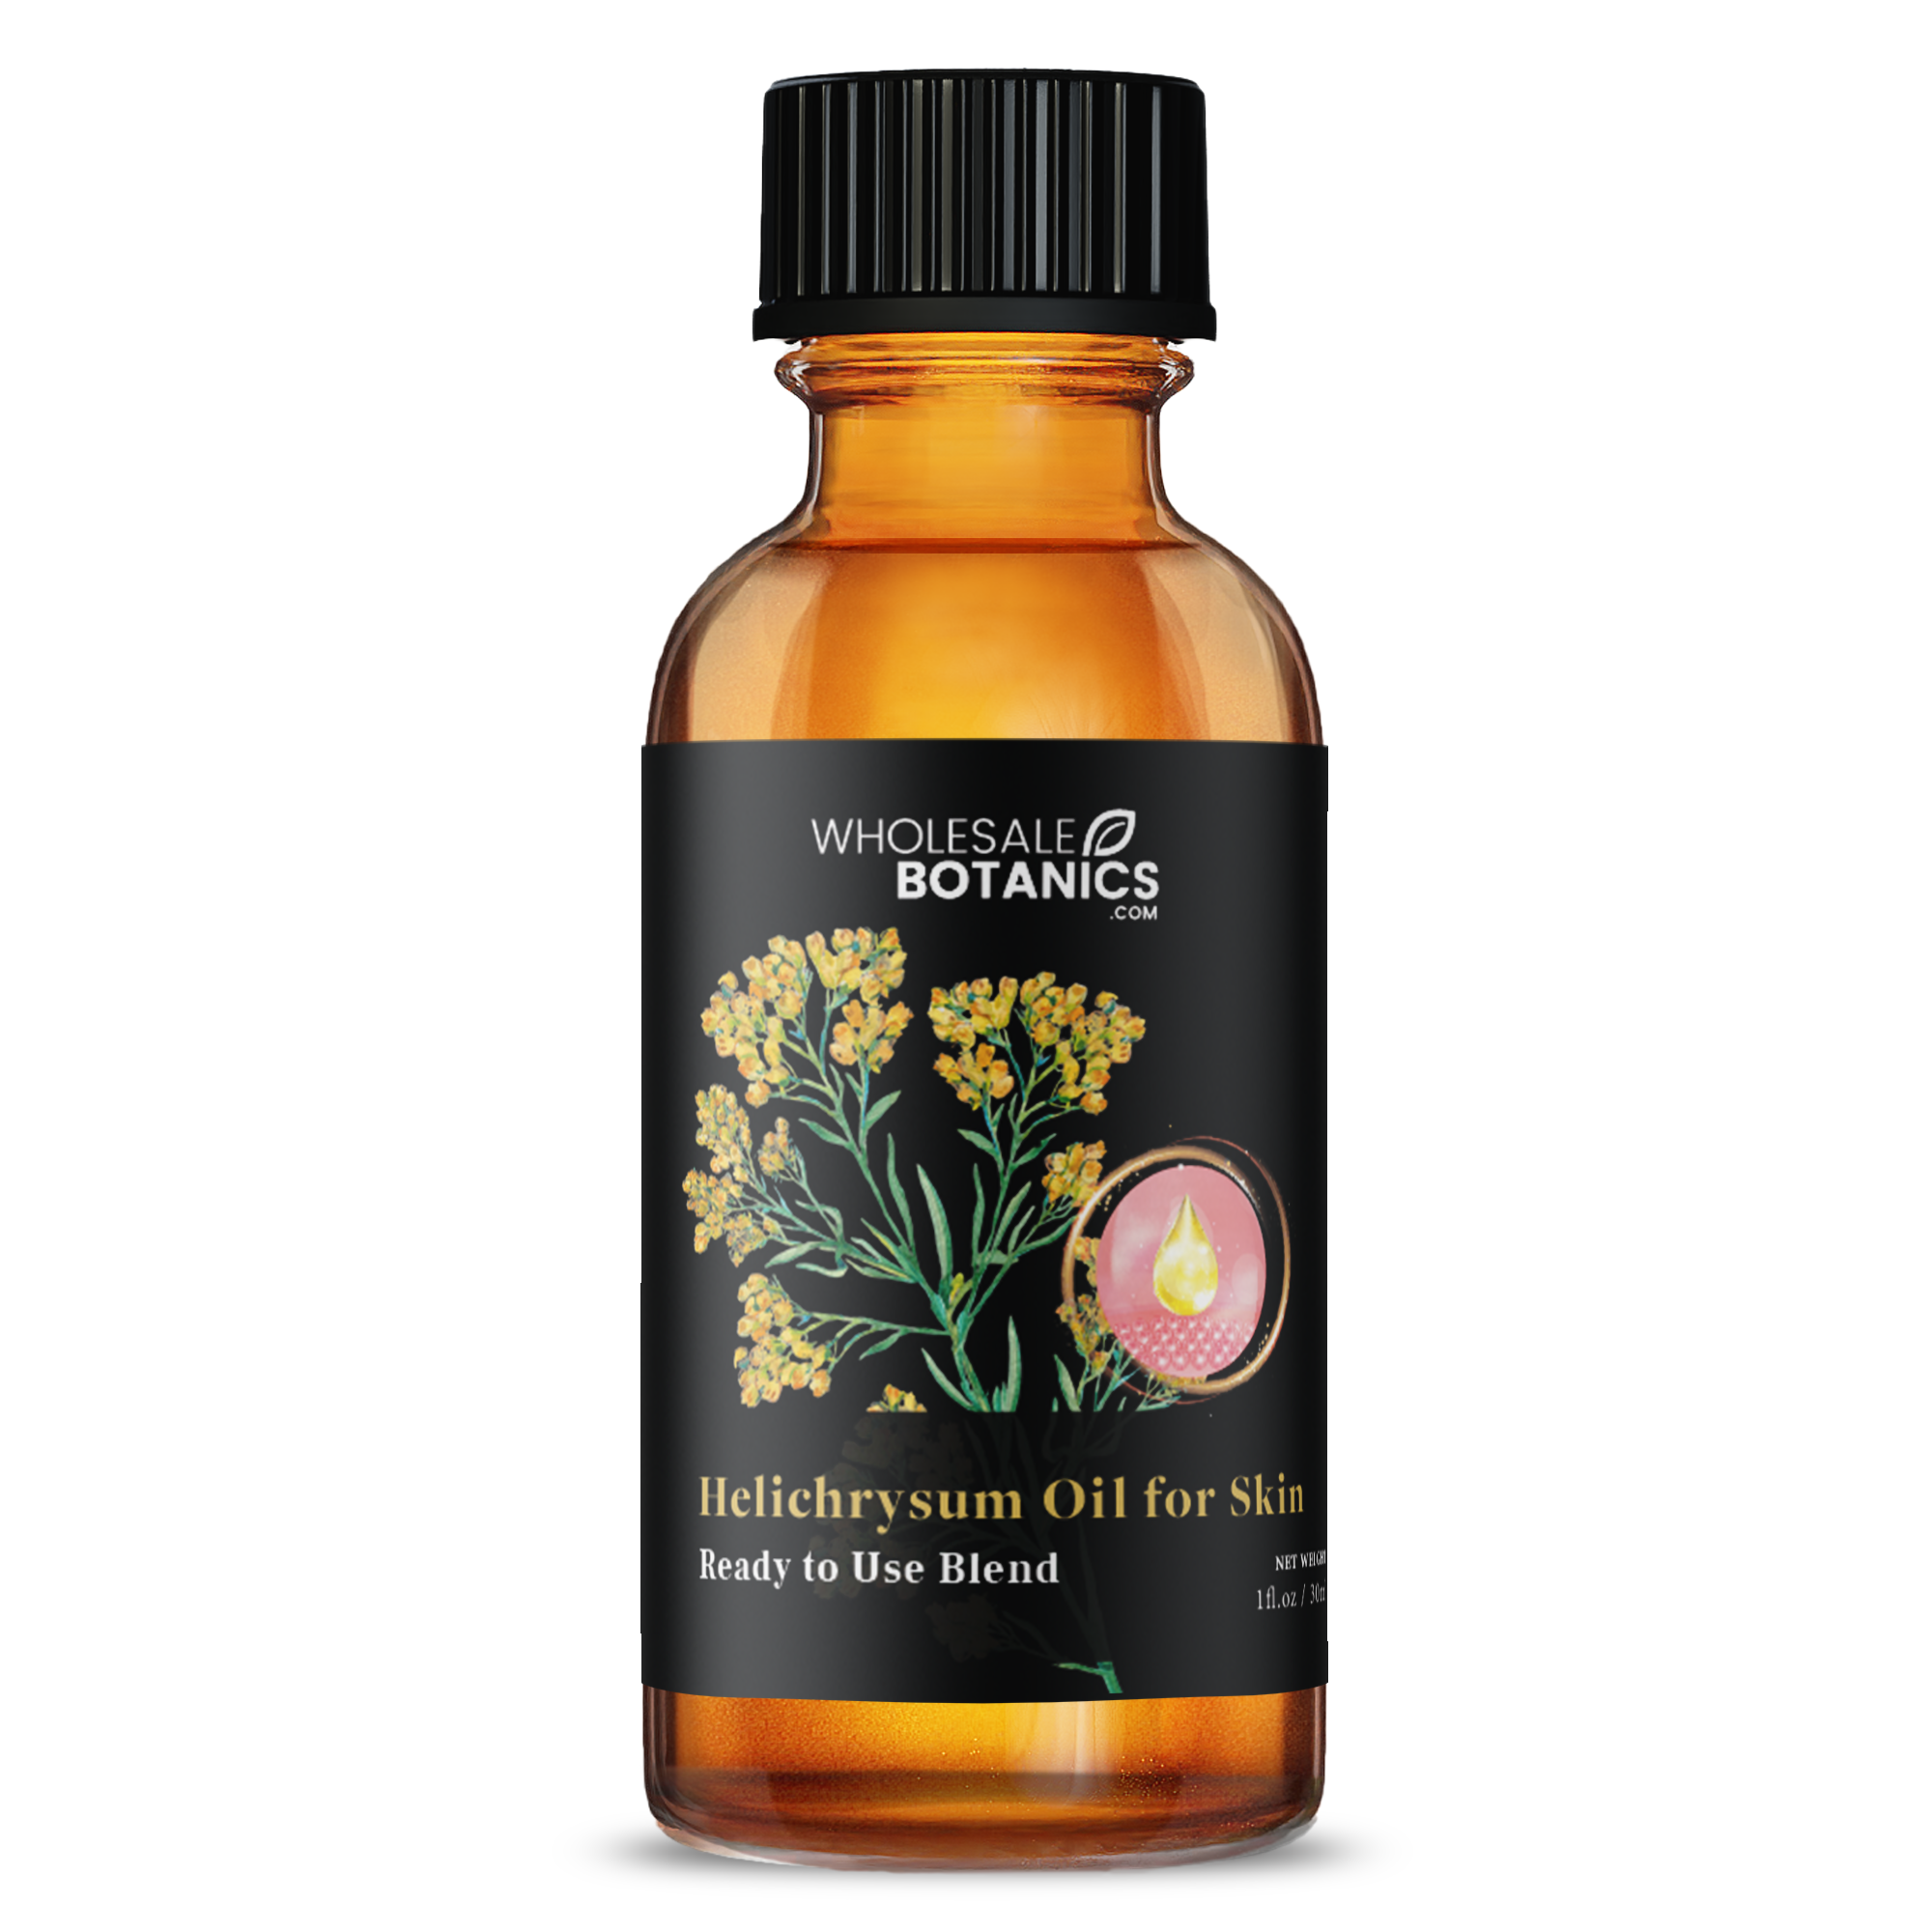 Helichrysum Oil For Skin